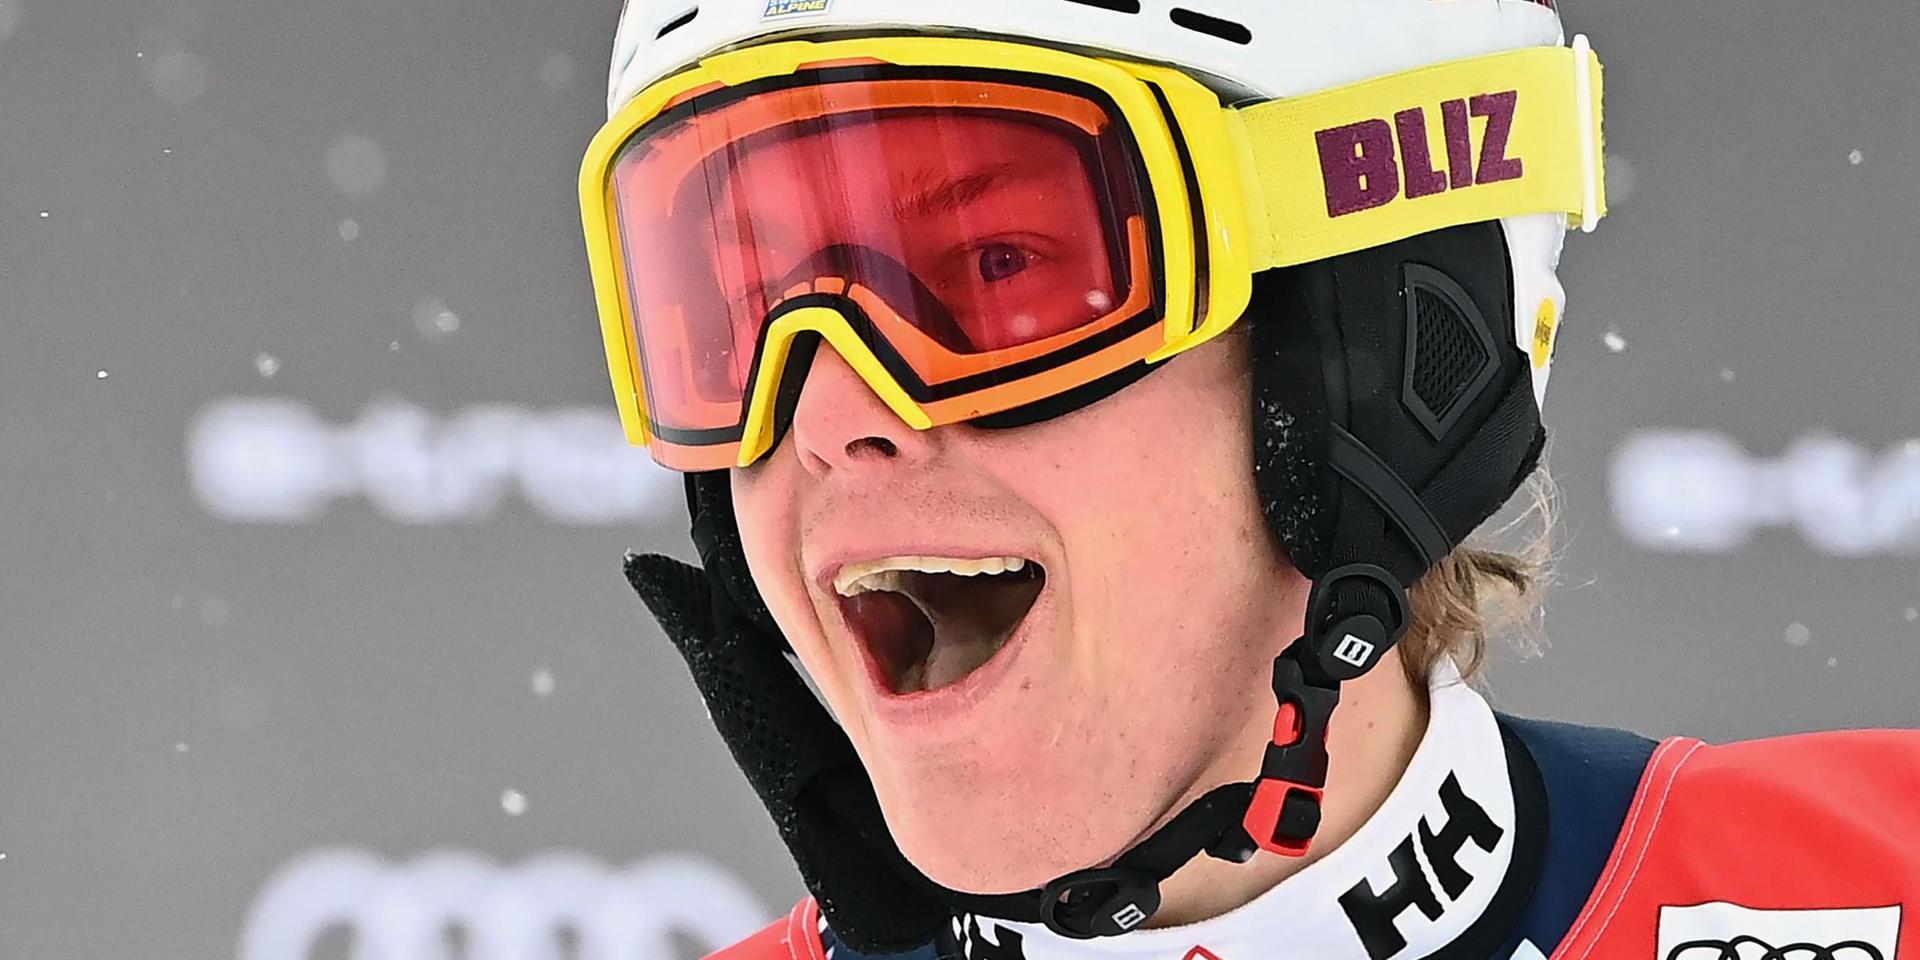 Visst ska han vara glad. Med andra åkets tredje snabbaste tid klättrade Kristoffer Jakobsen till åttonde plats i Flachaus slalom – hans främsta placering i vinter.